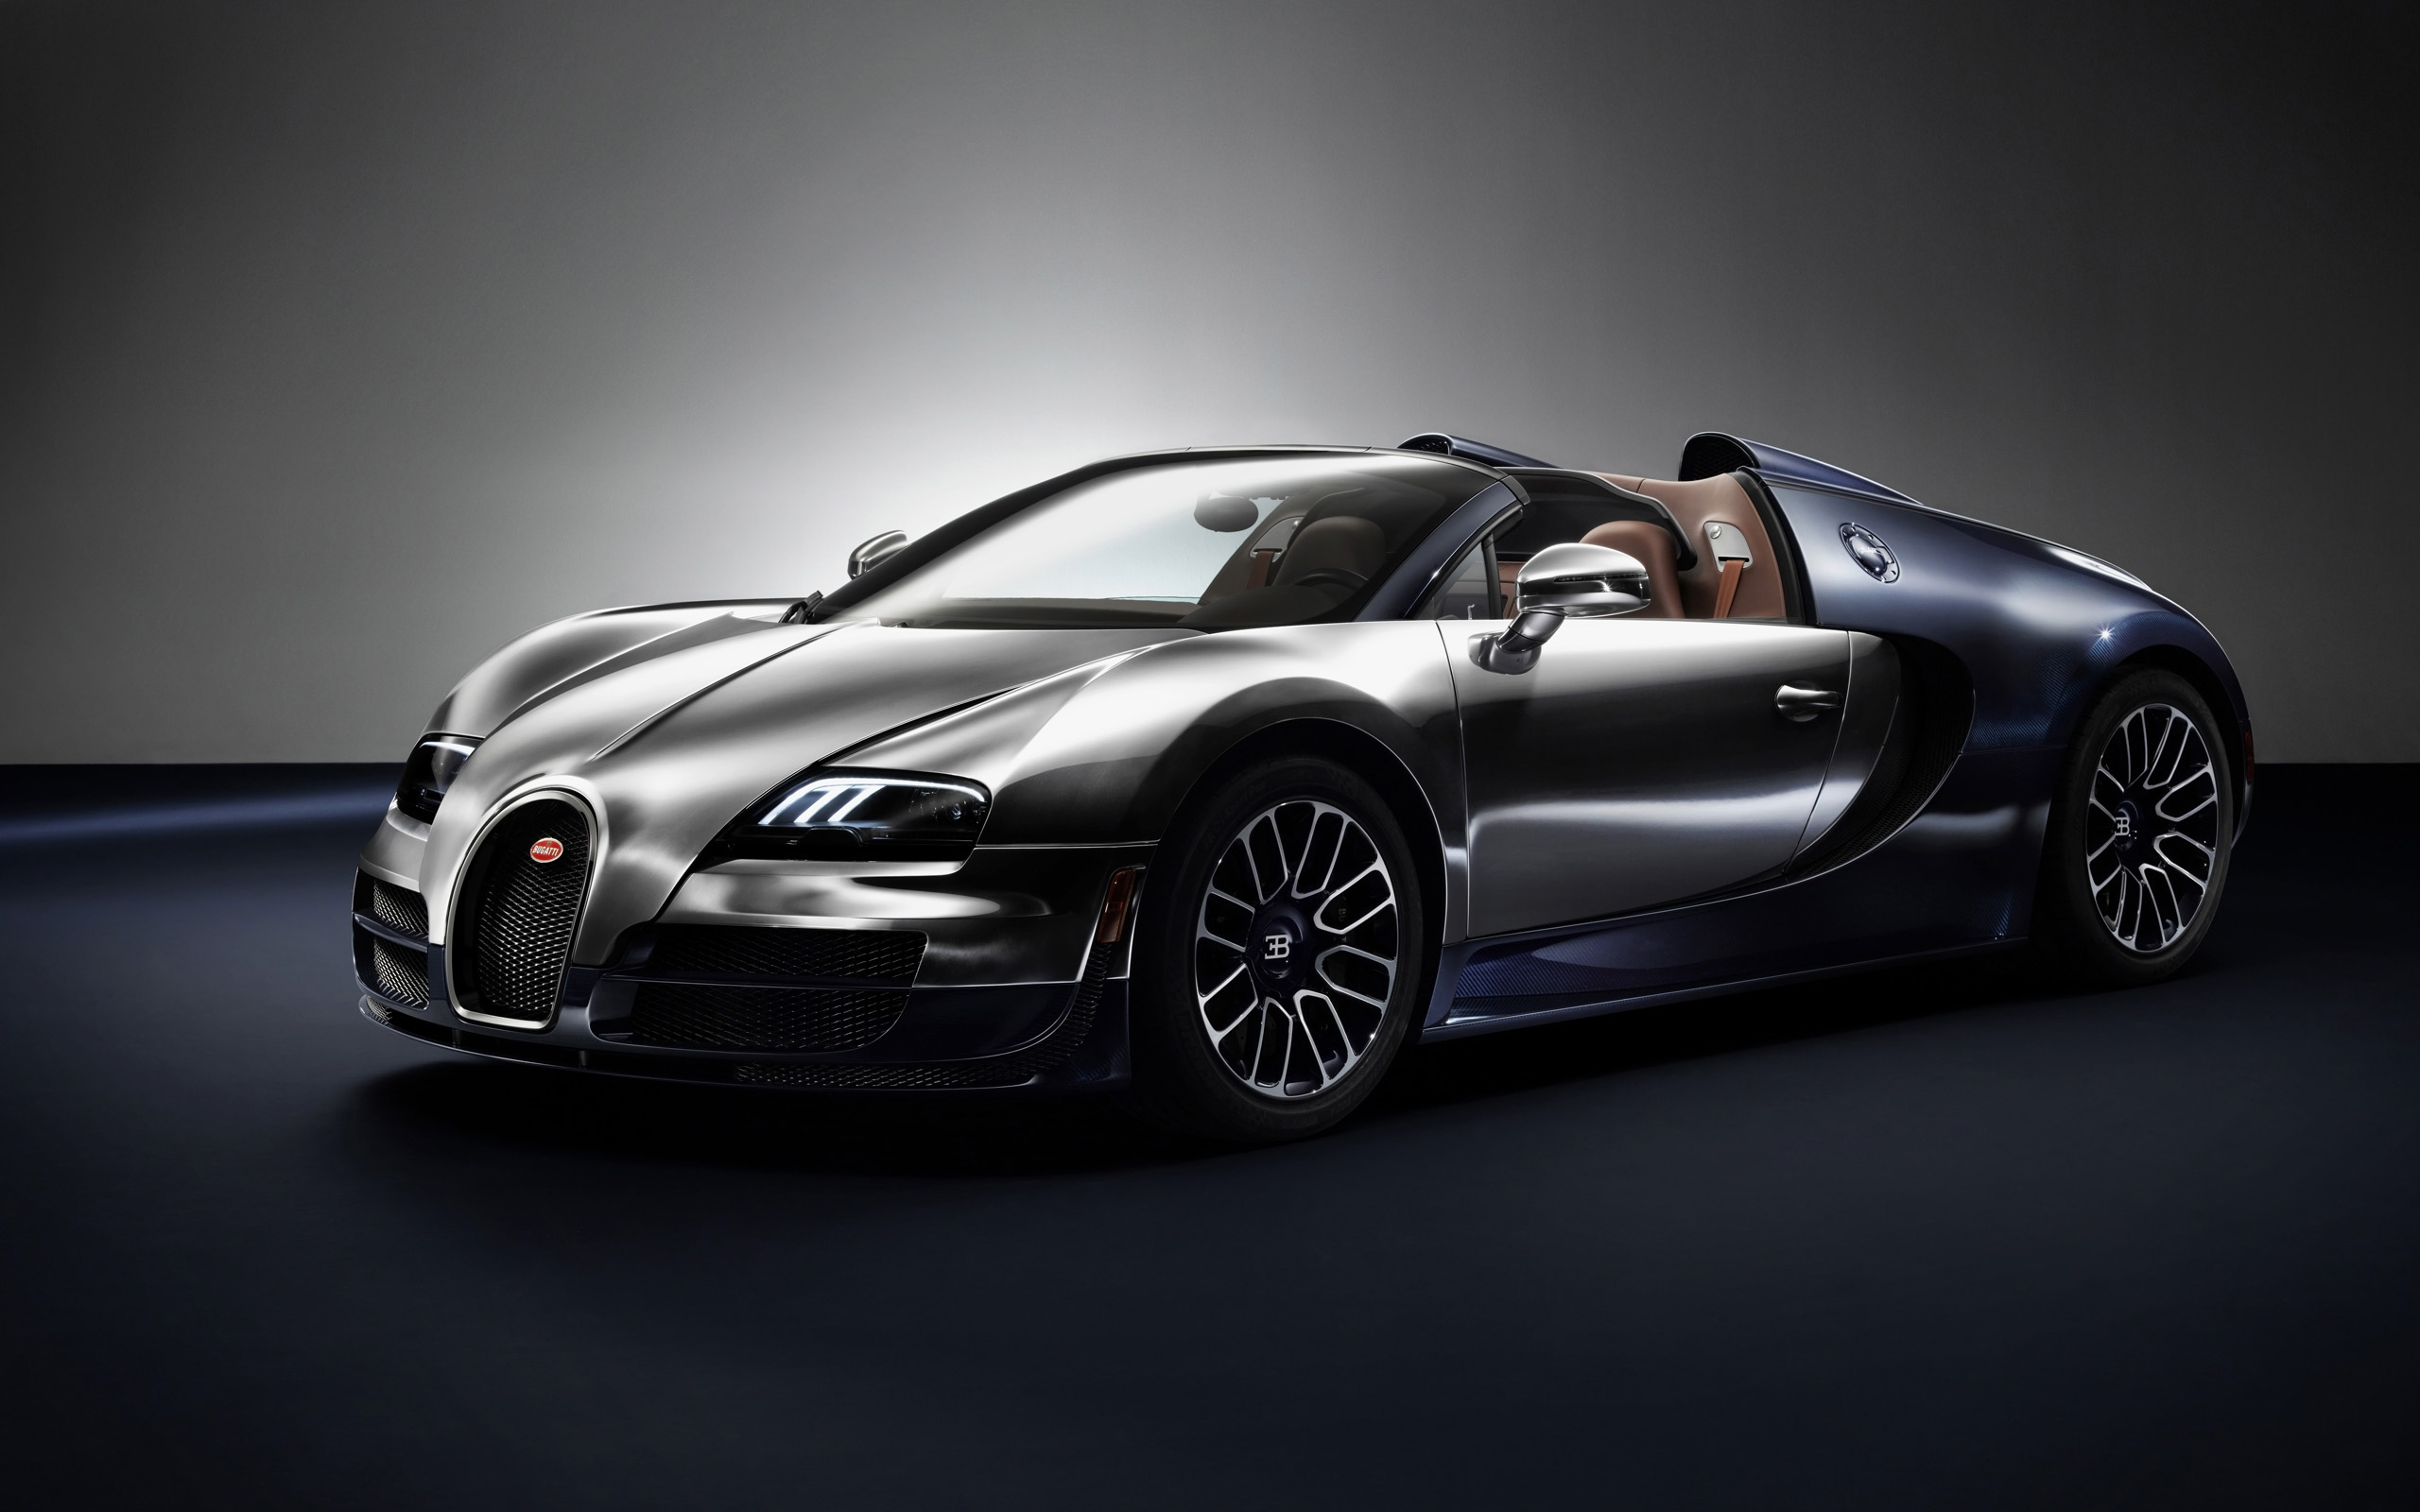 2014 Bugatti Veyron Ettore Bugatti Legend Edition - Ettore Bugatti Veyron - HD Wallpaper 